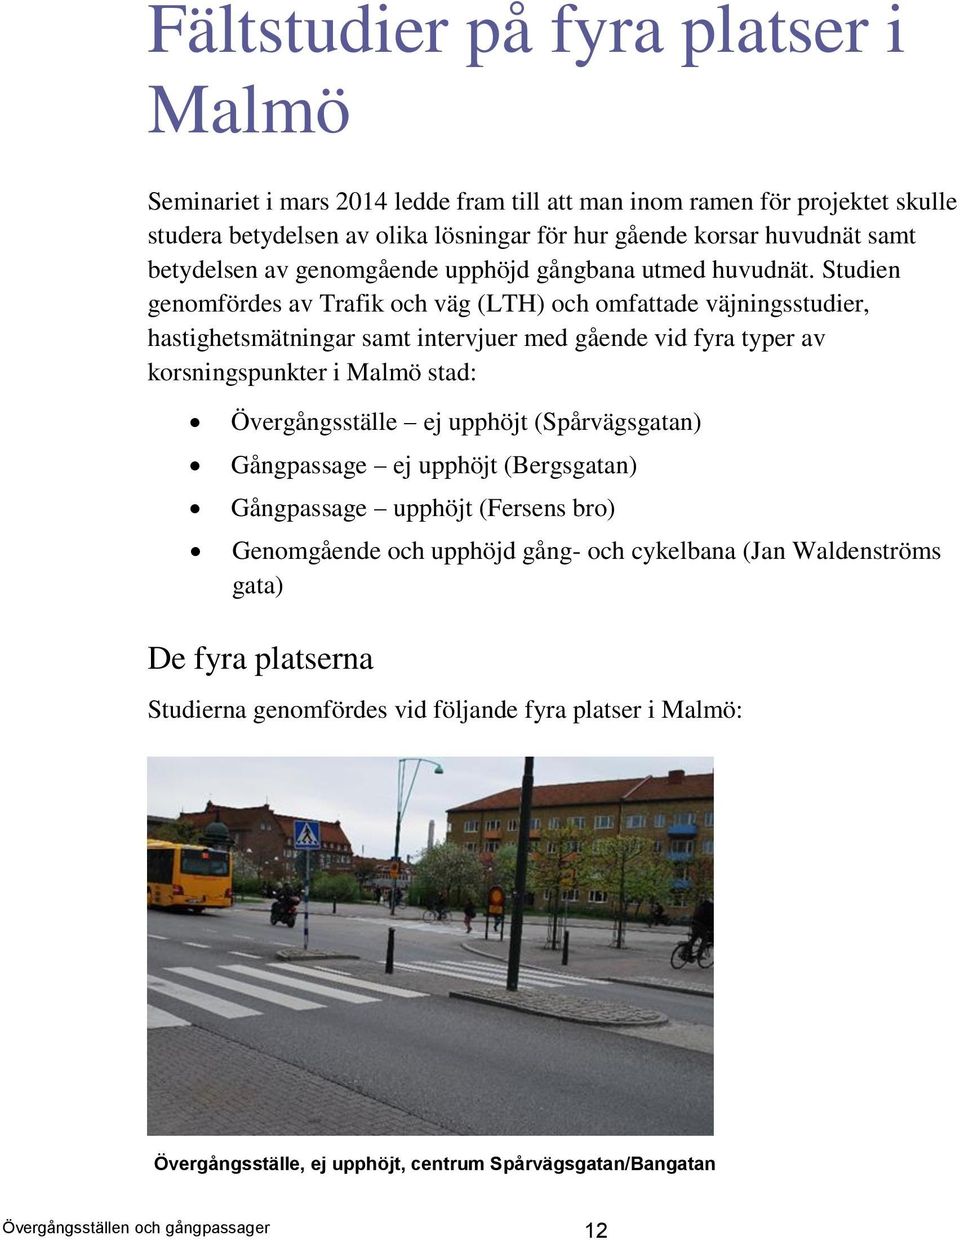 Studien genomfördes av Trafik och väg (LTH) och omfattade väjningsstudier, hastighetsmätningar samt intervjuer med gående vid fyra typer av korsningspunkter i Malmö stad: Övergångsställe ej